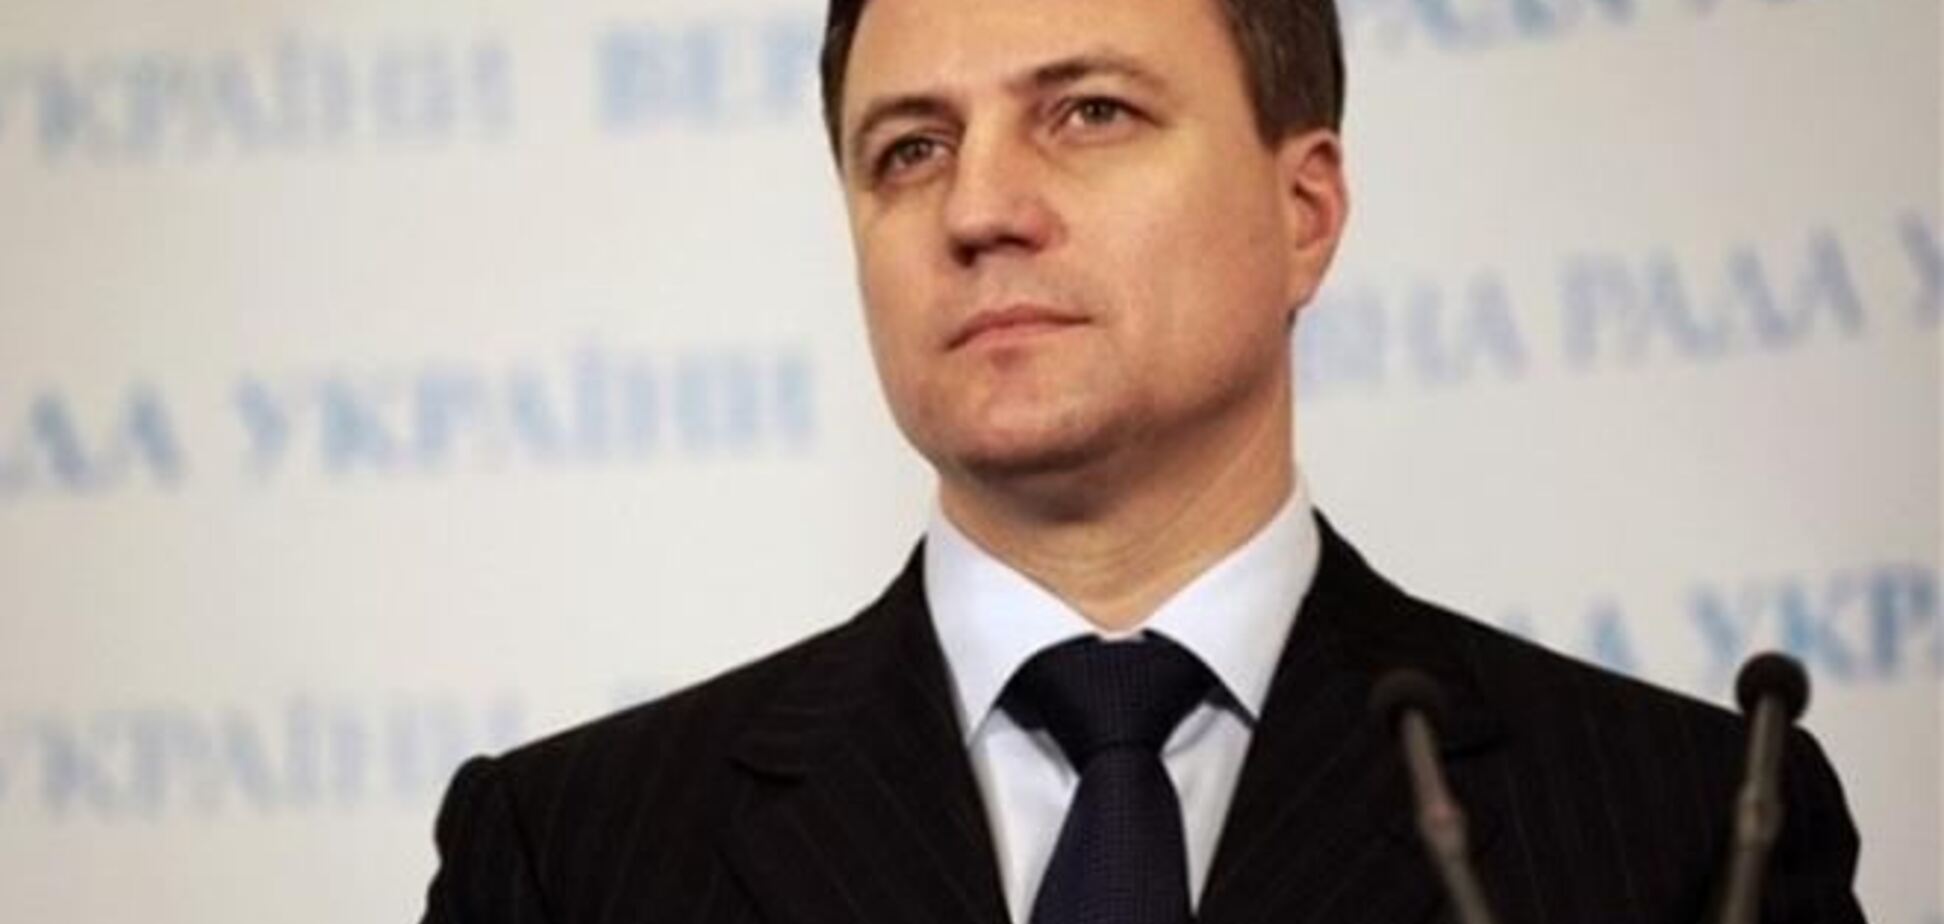 Катеринчук просит суд признать противоправными действия парламента 16 января